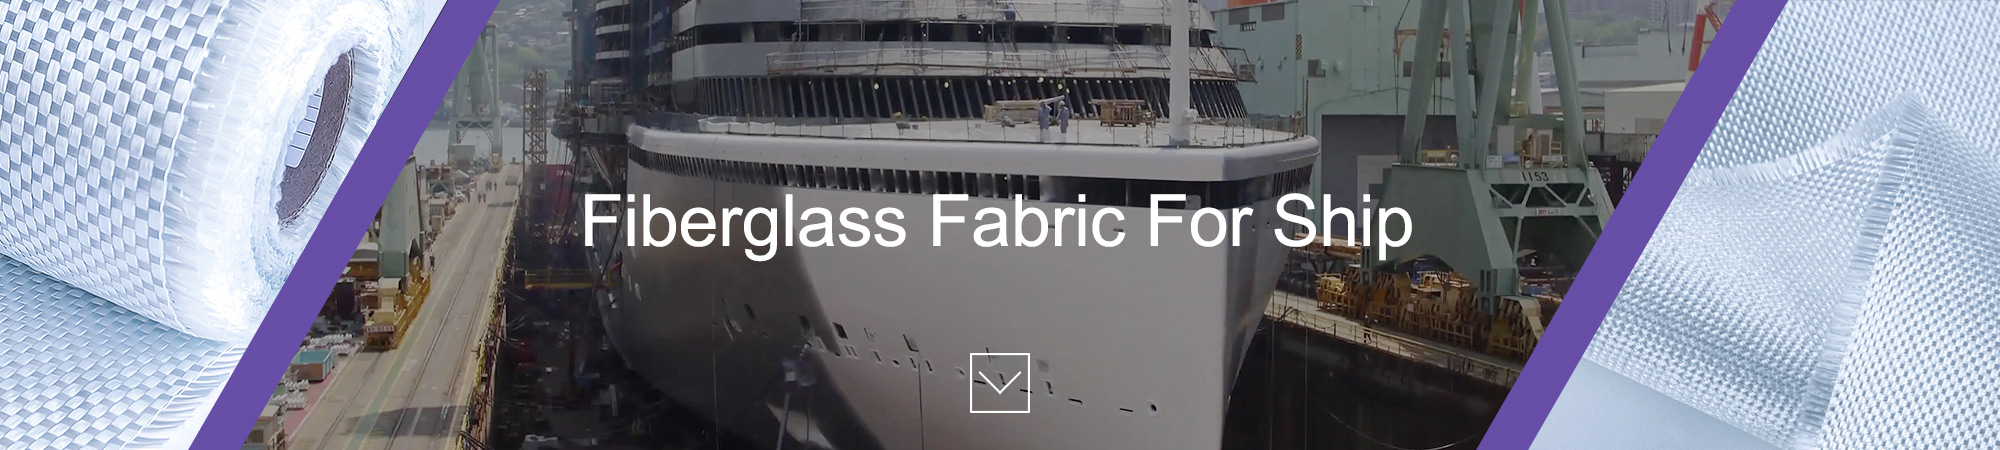 fiberglass fabric for ship